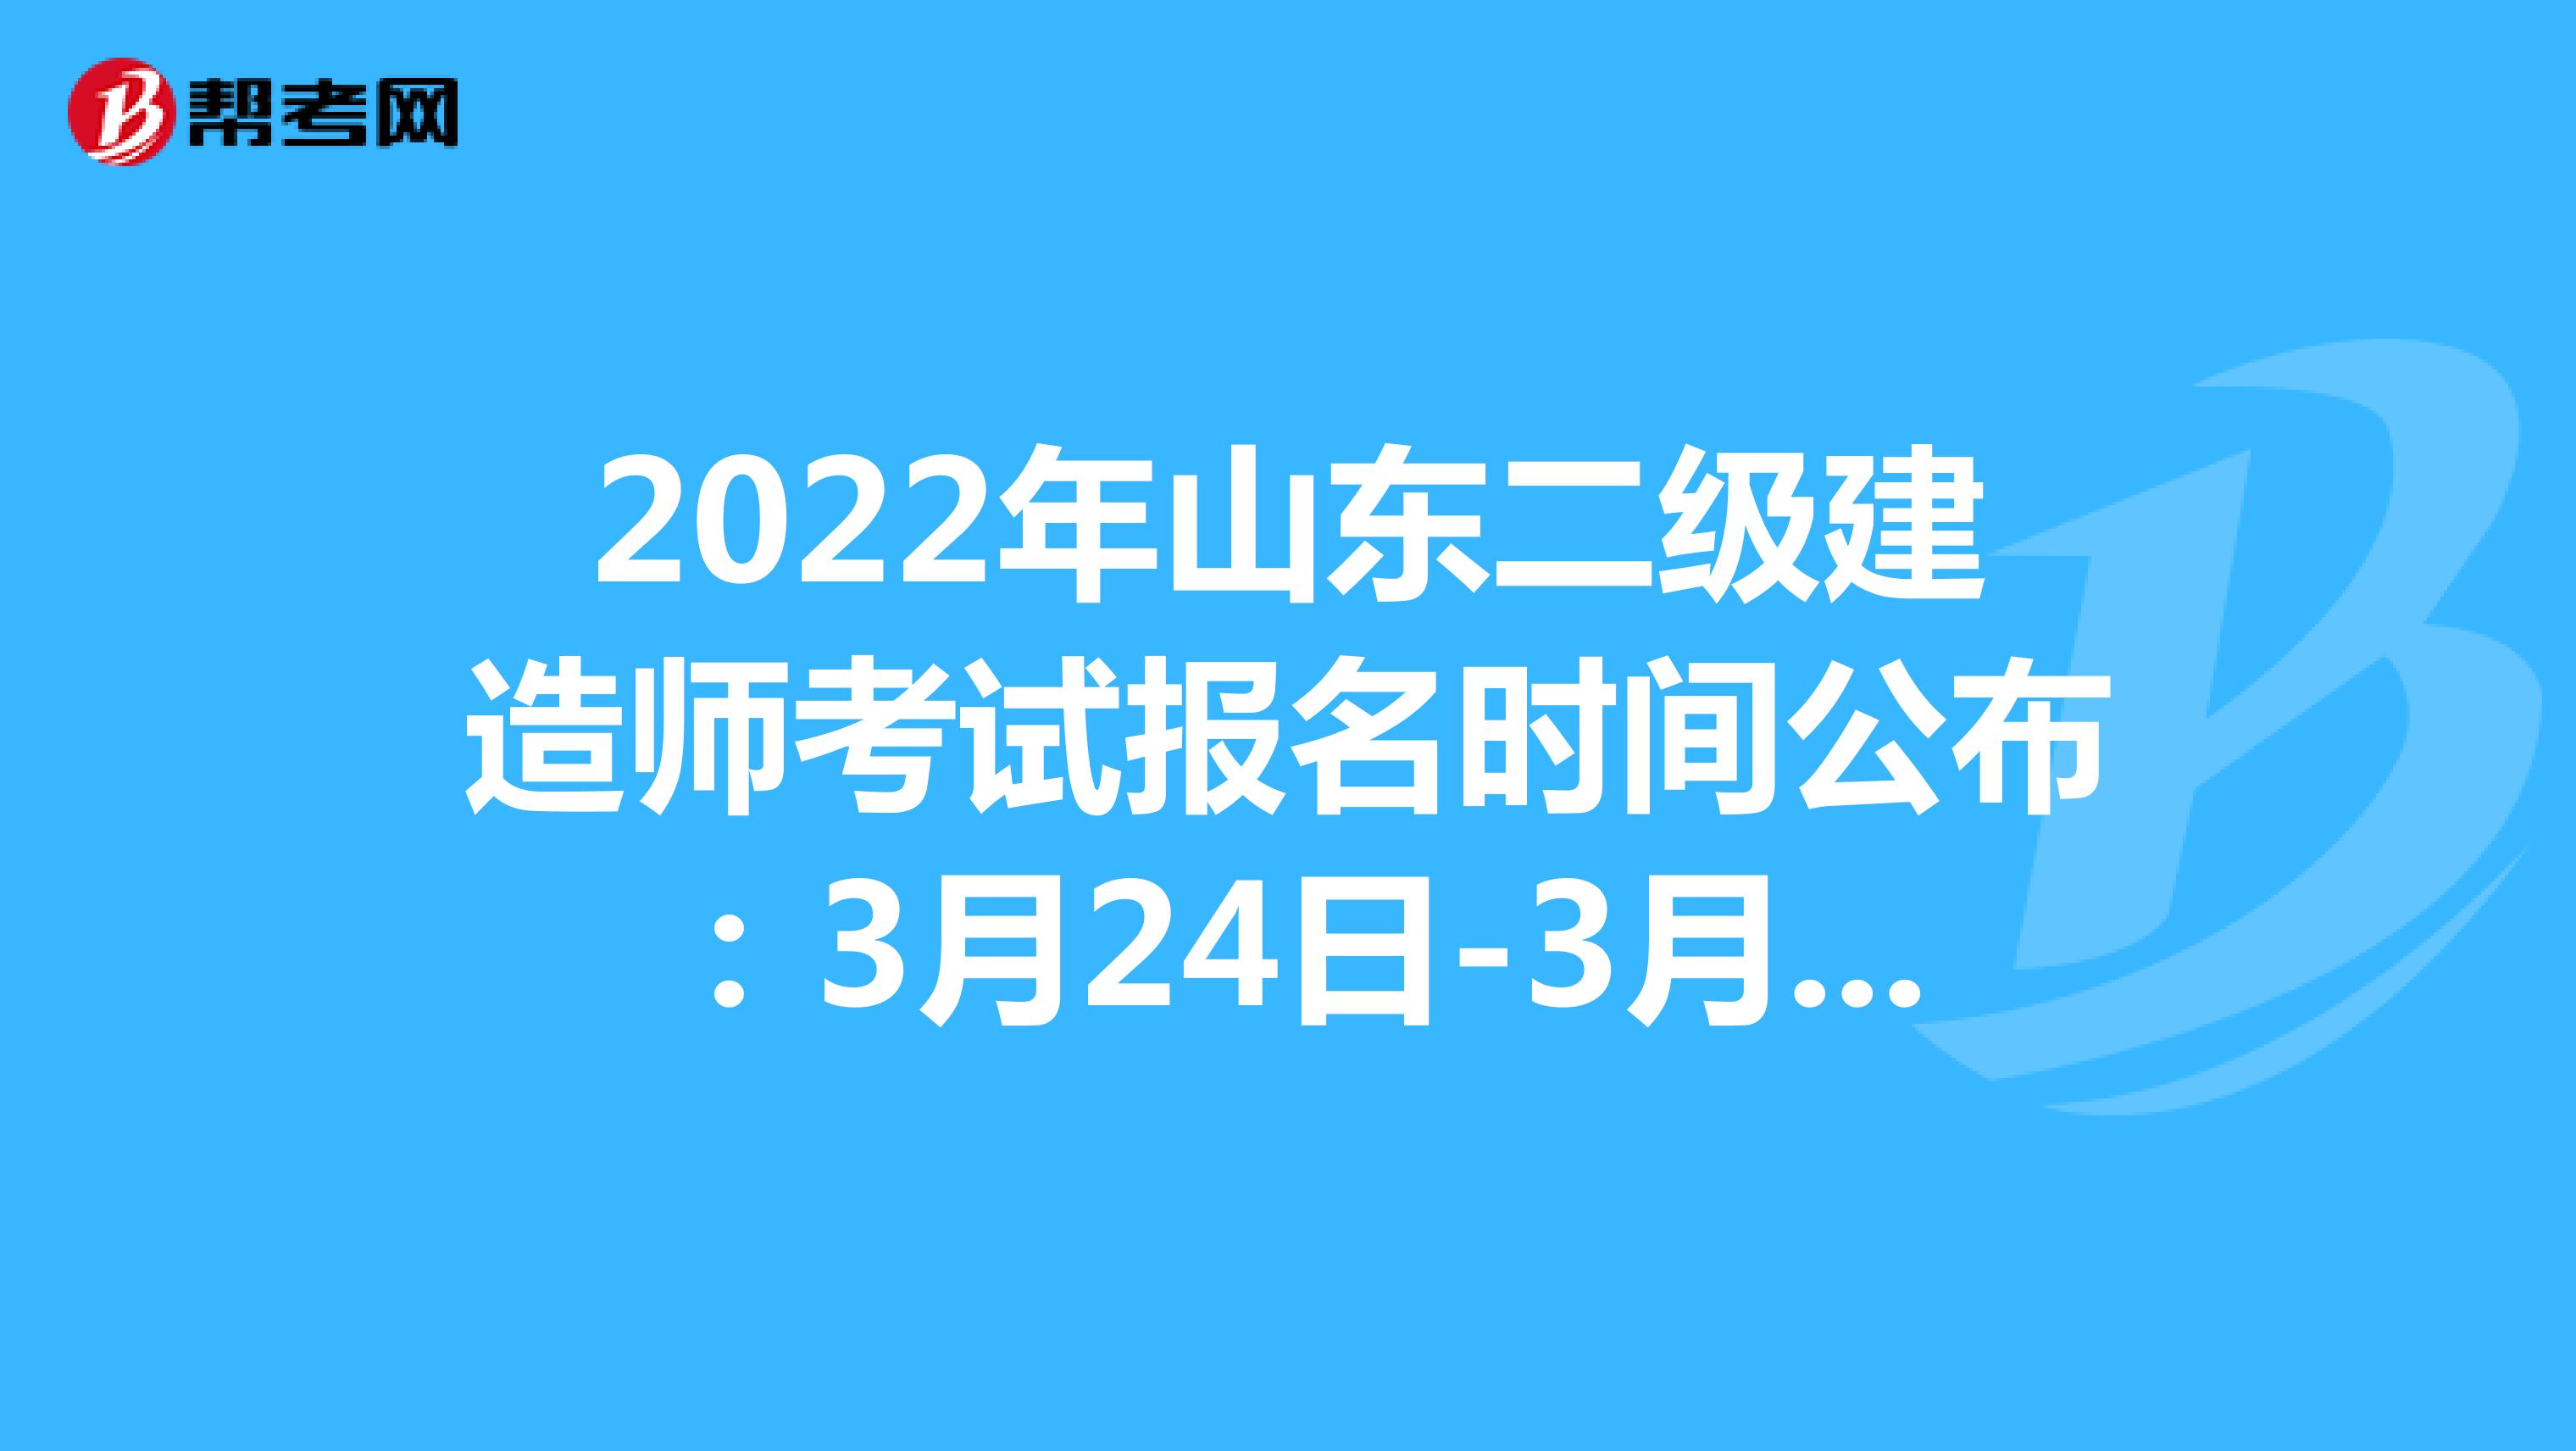 2022年山東二級建造師考試報名時間公布：3月24日-3月31日